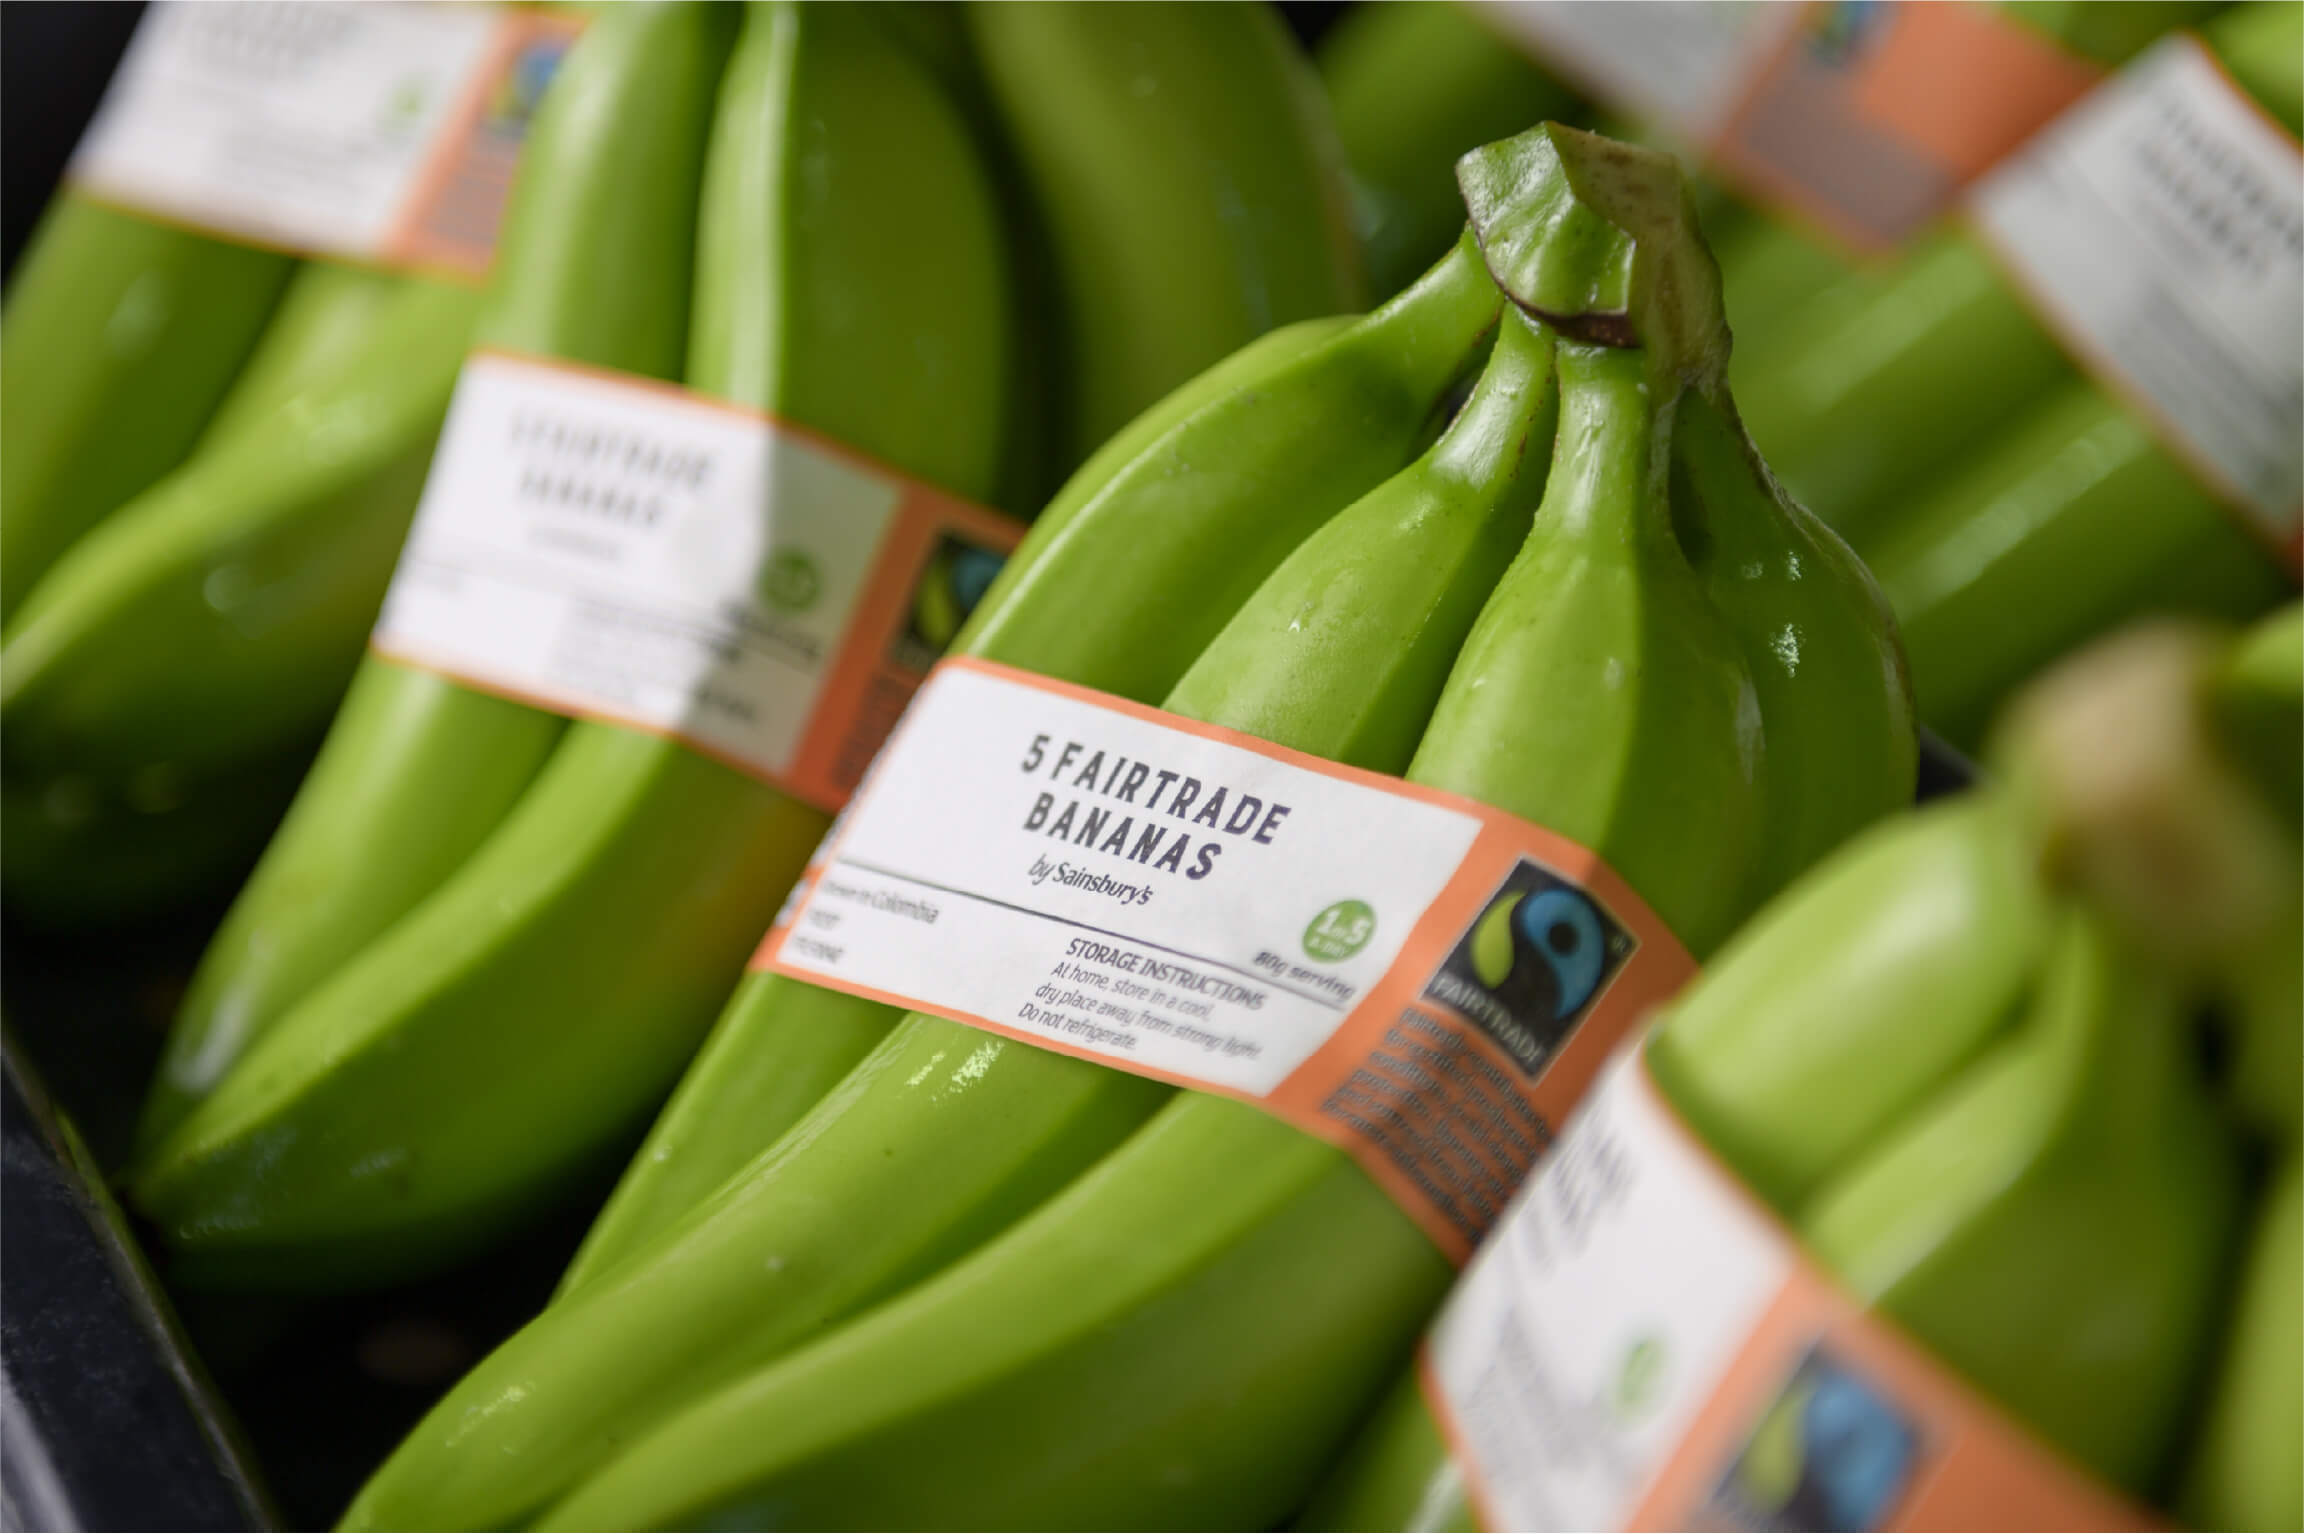 Fairtrade bananas Uniban